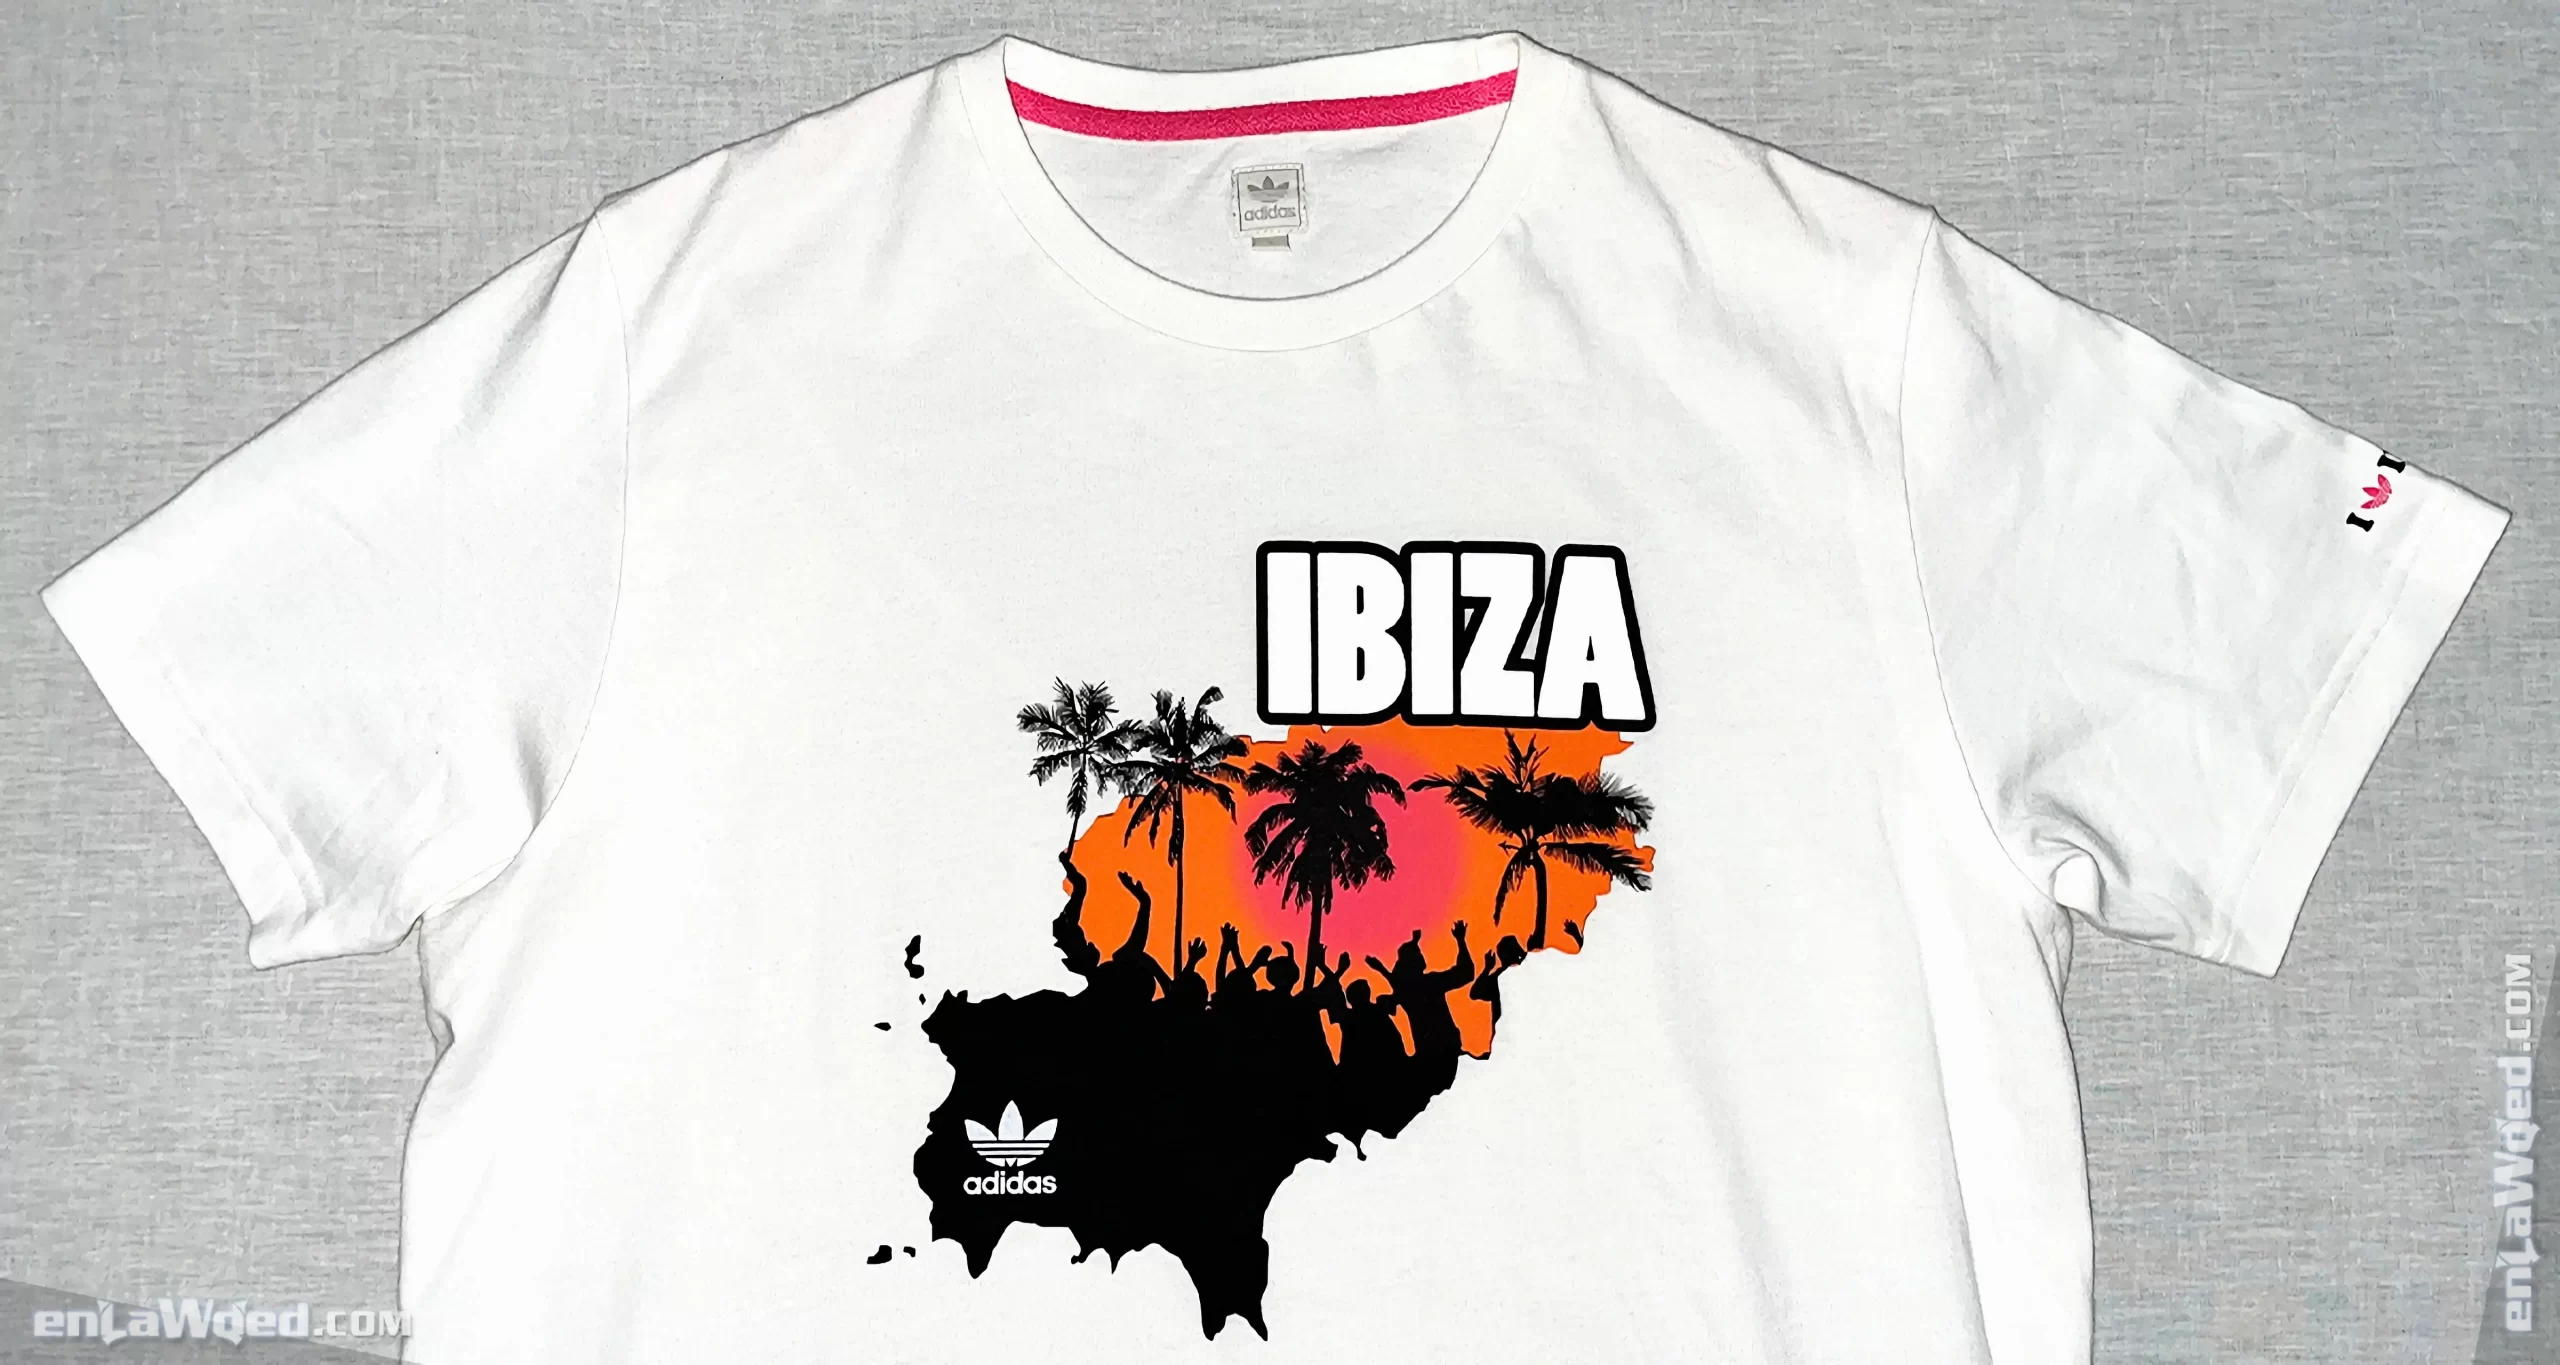 Men’s 2007 Ibiza T-Shirt by Adidas Originals: Ignite (EnLawded.com file #lmc5p9vket4oii6d02o)